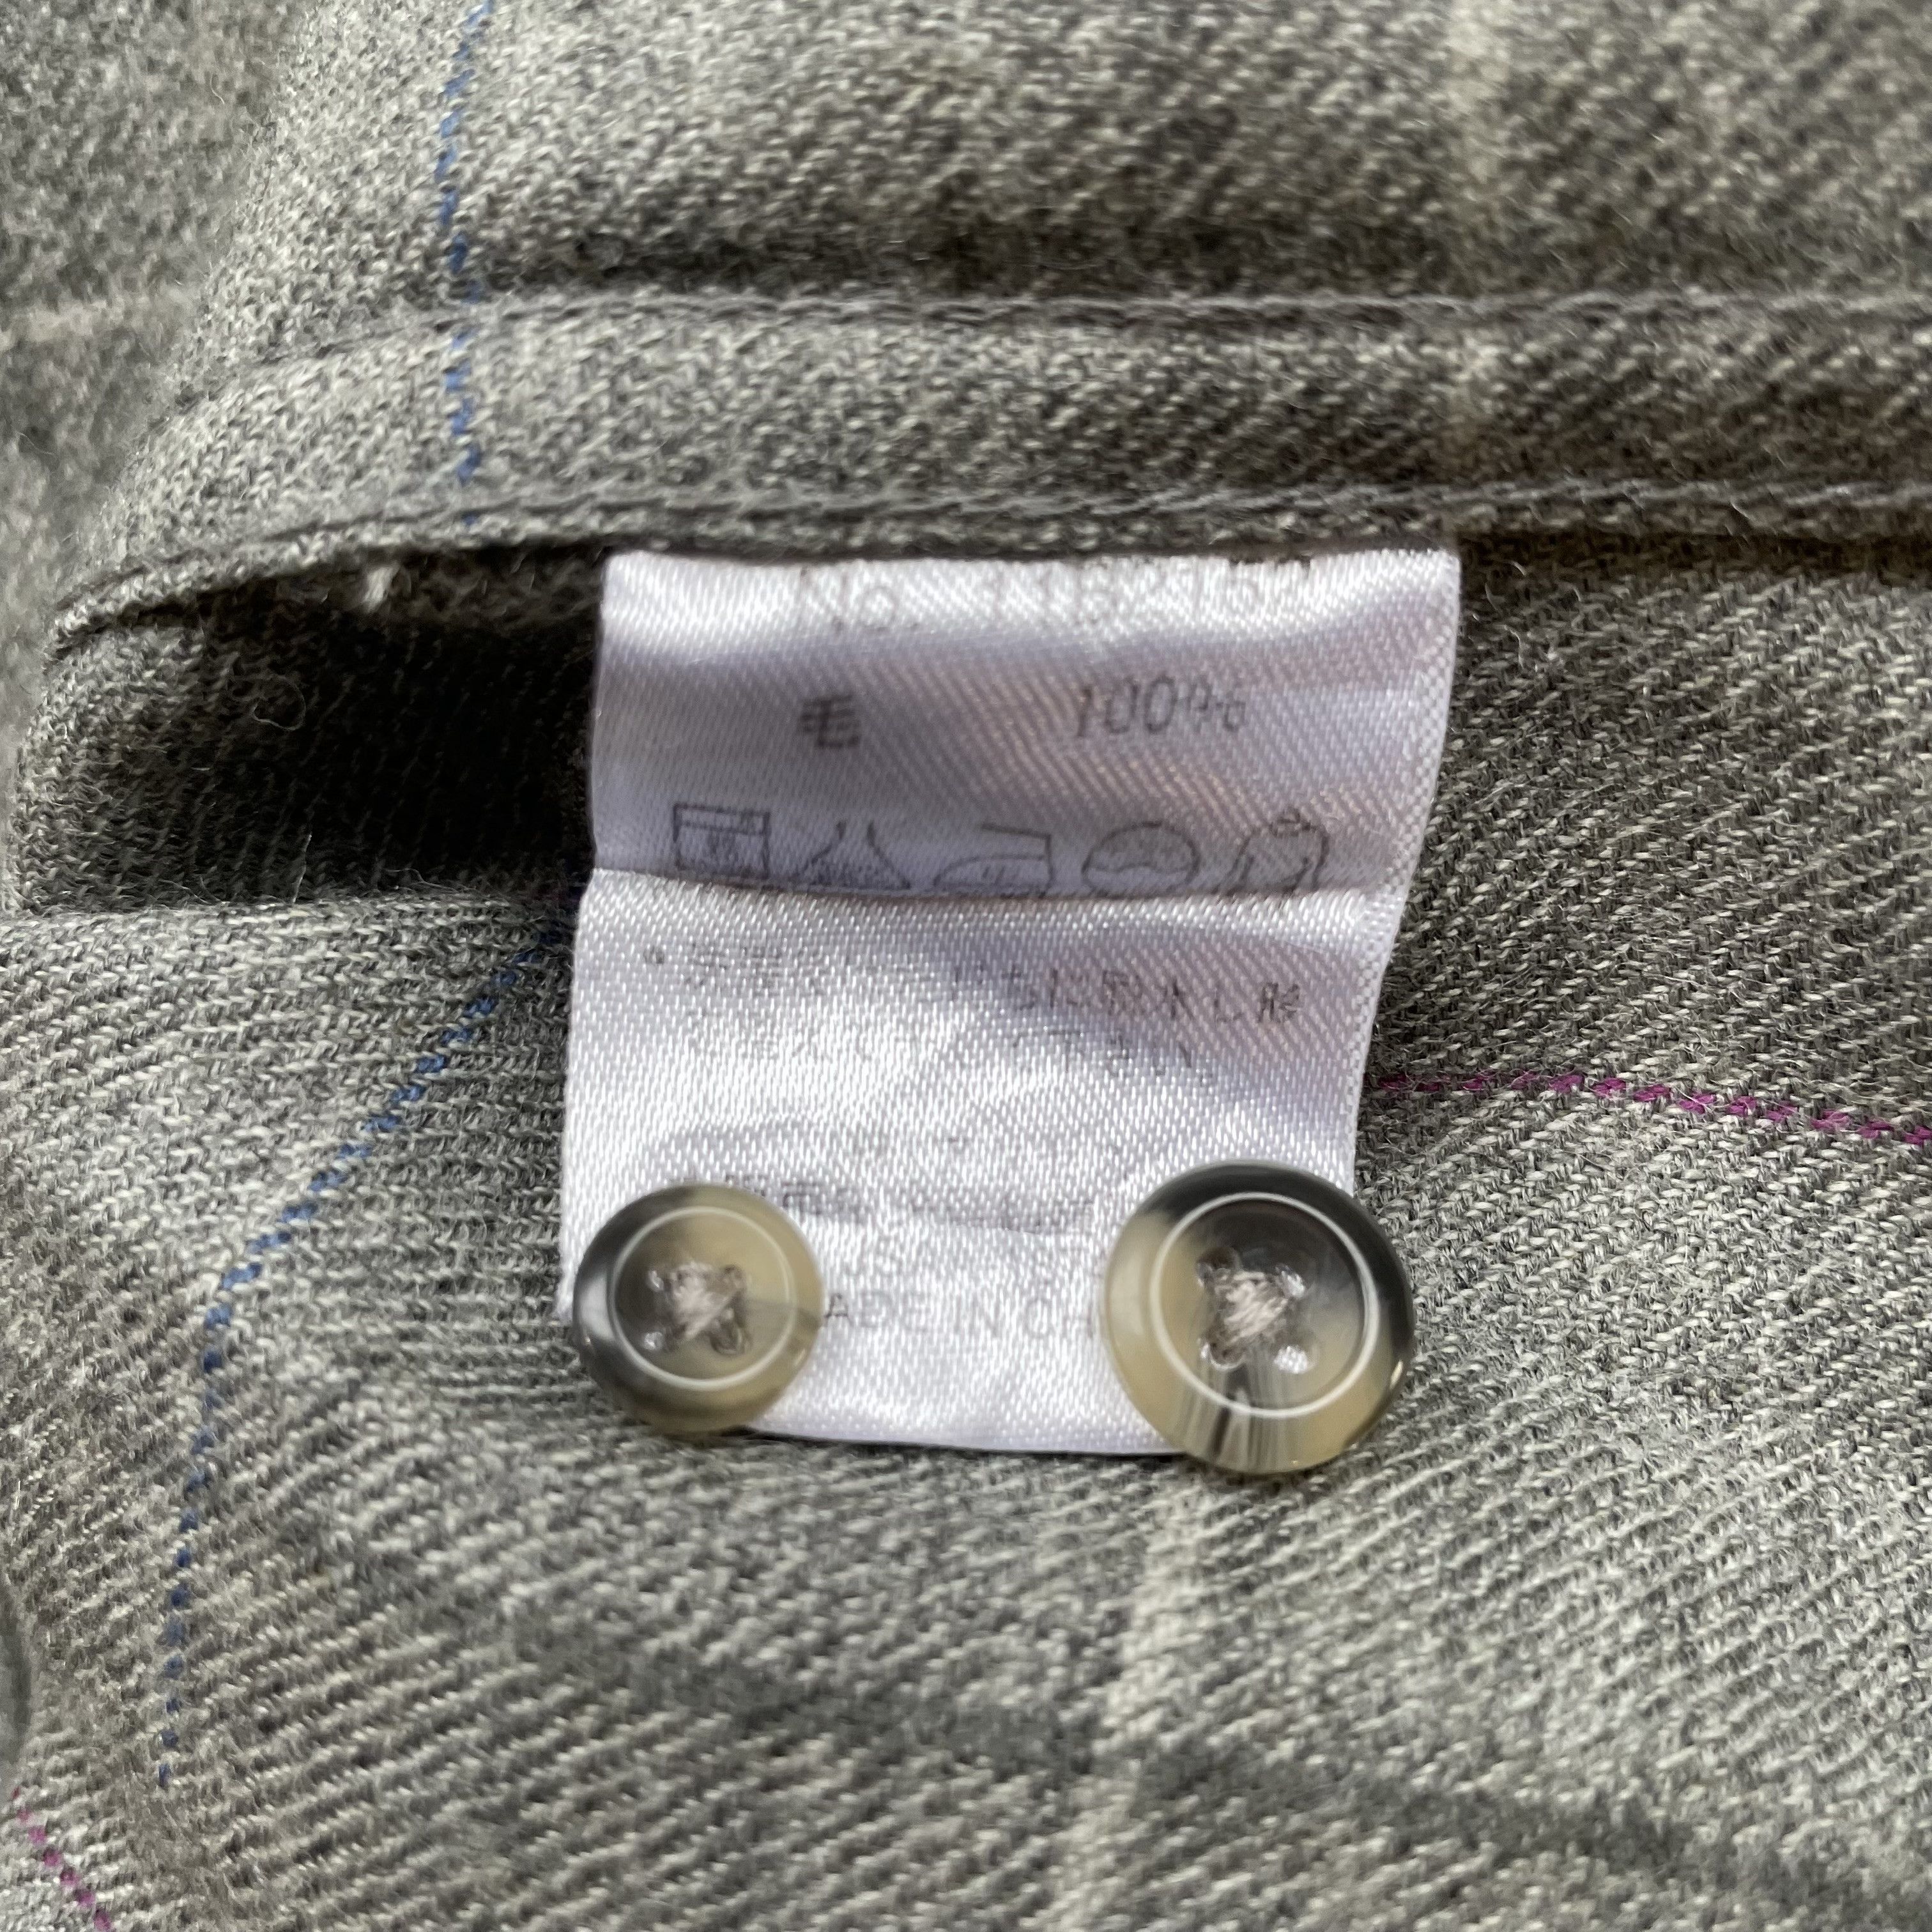 Kansai Yamamoto - Minimalist Check Shirt, Wool, (JP LL) - 5